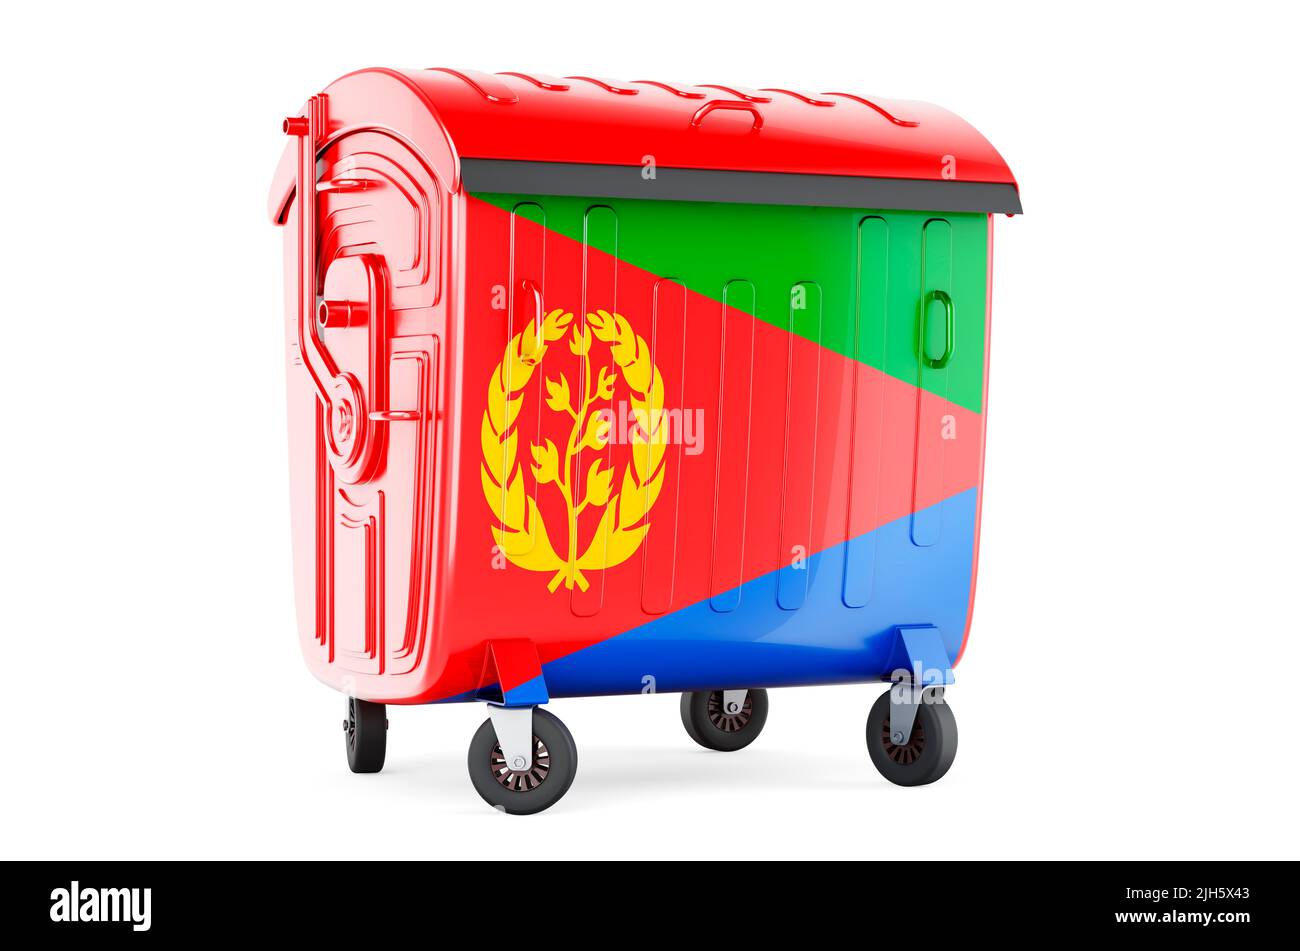 Müllcontainer mit eritreischer Flagge, 3D, isoliert auf weißem Hintergrund Stockfoto